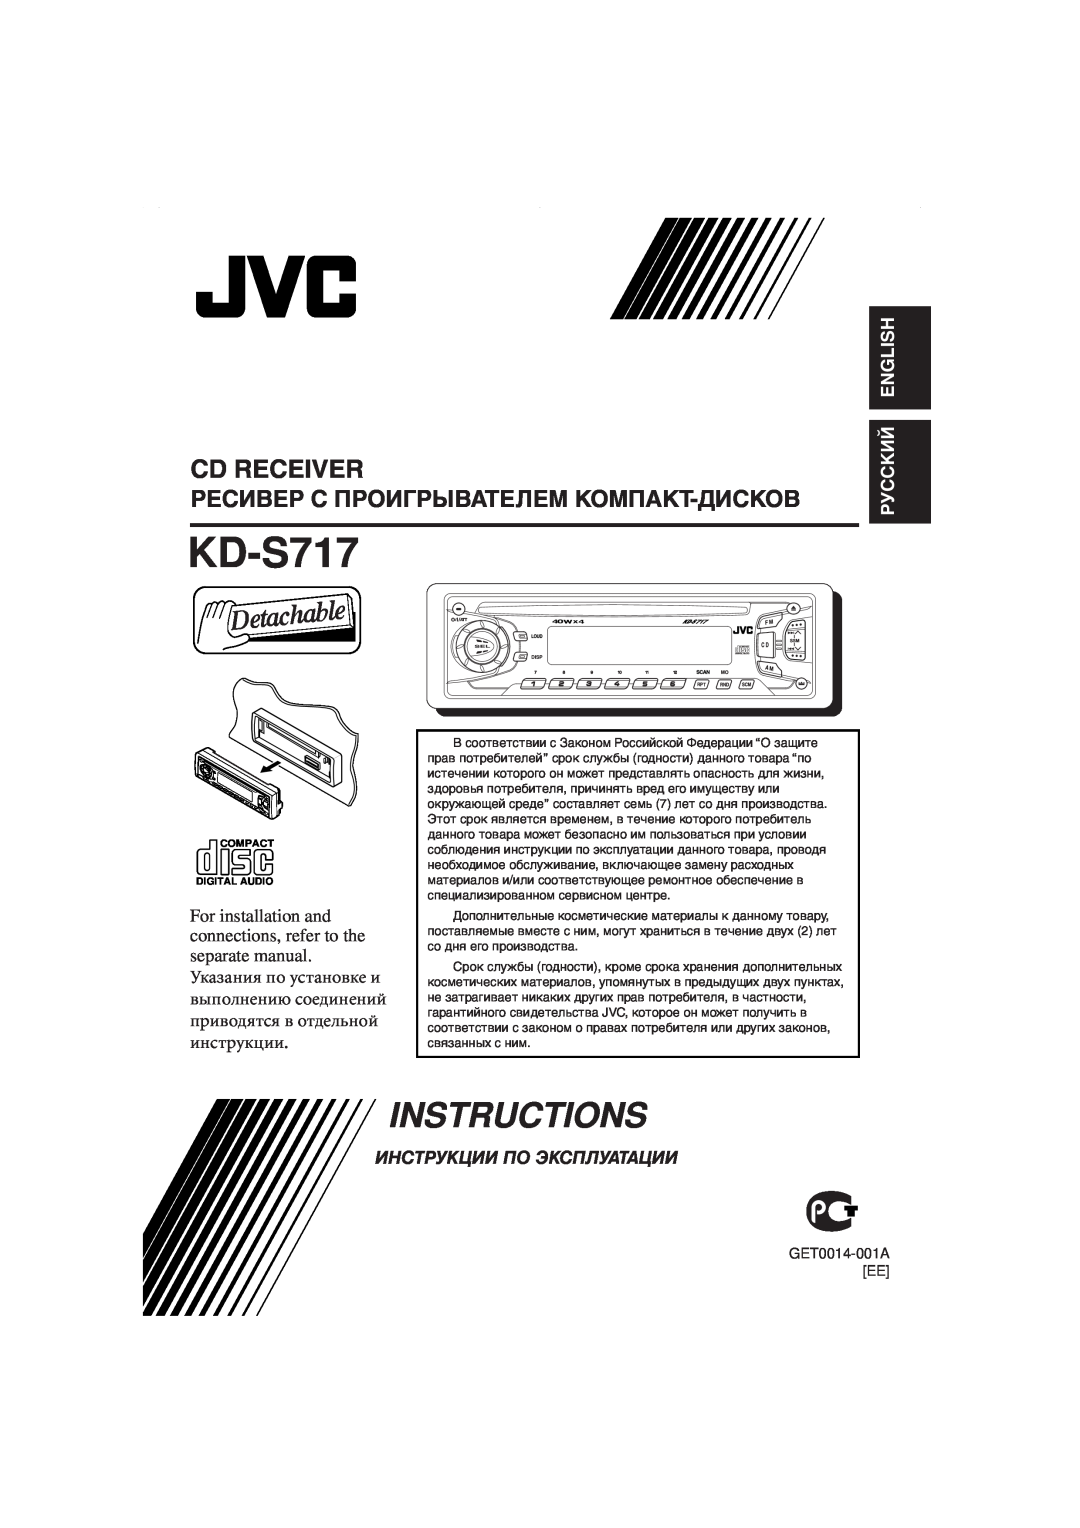 JVC KD-S717 manual Cd Receiver, Ресивер С Проигрывателем Компакт-Дисков, Instructions, Инструкции По Эксплуатации 